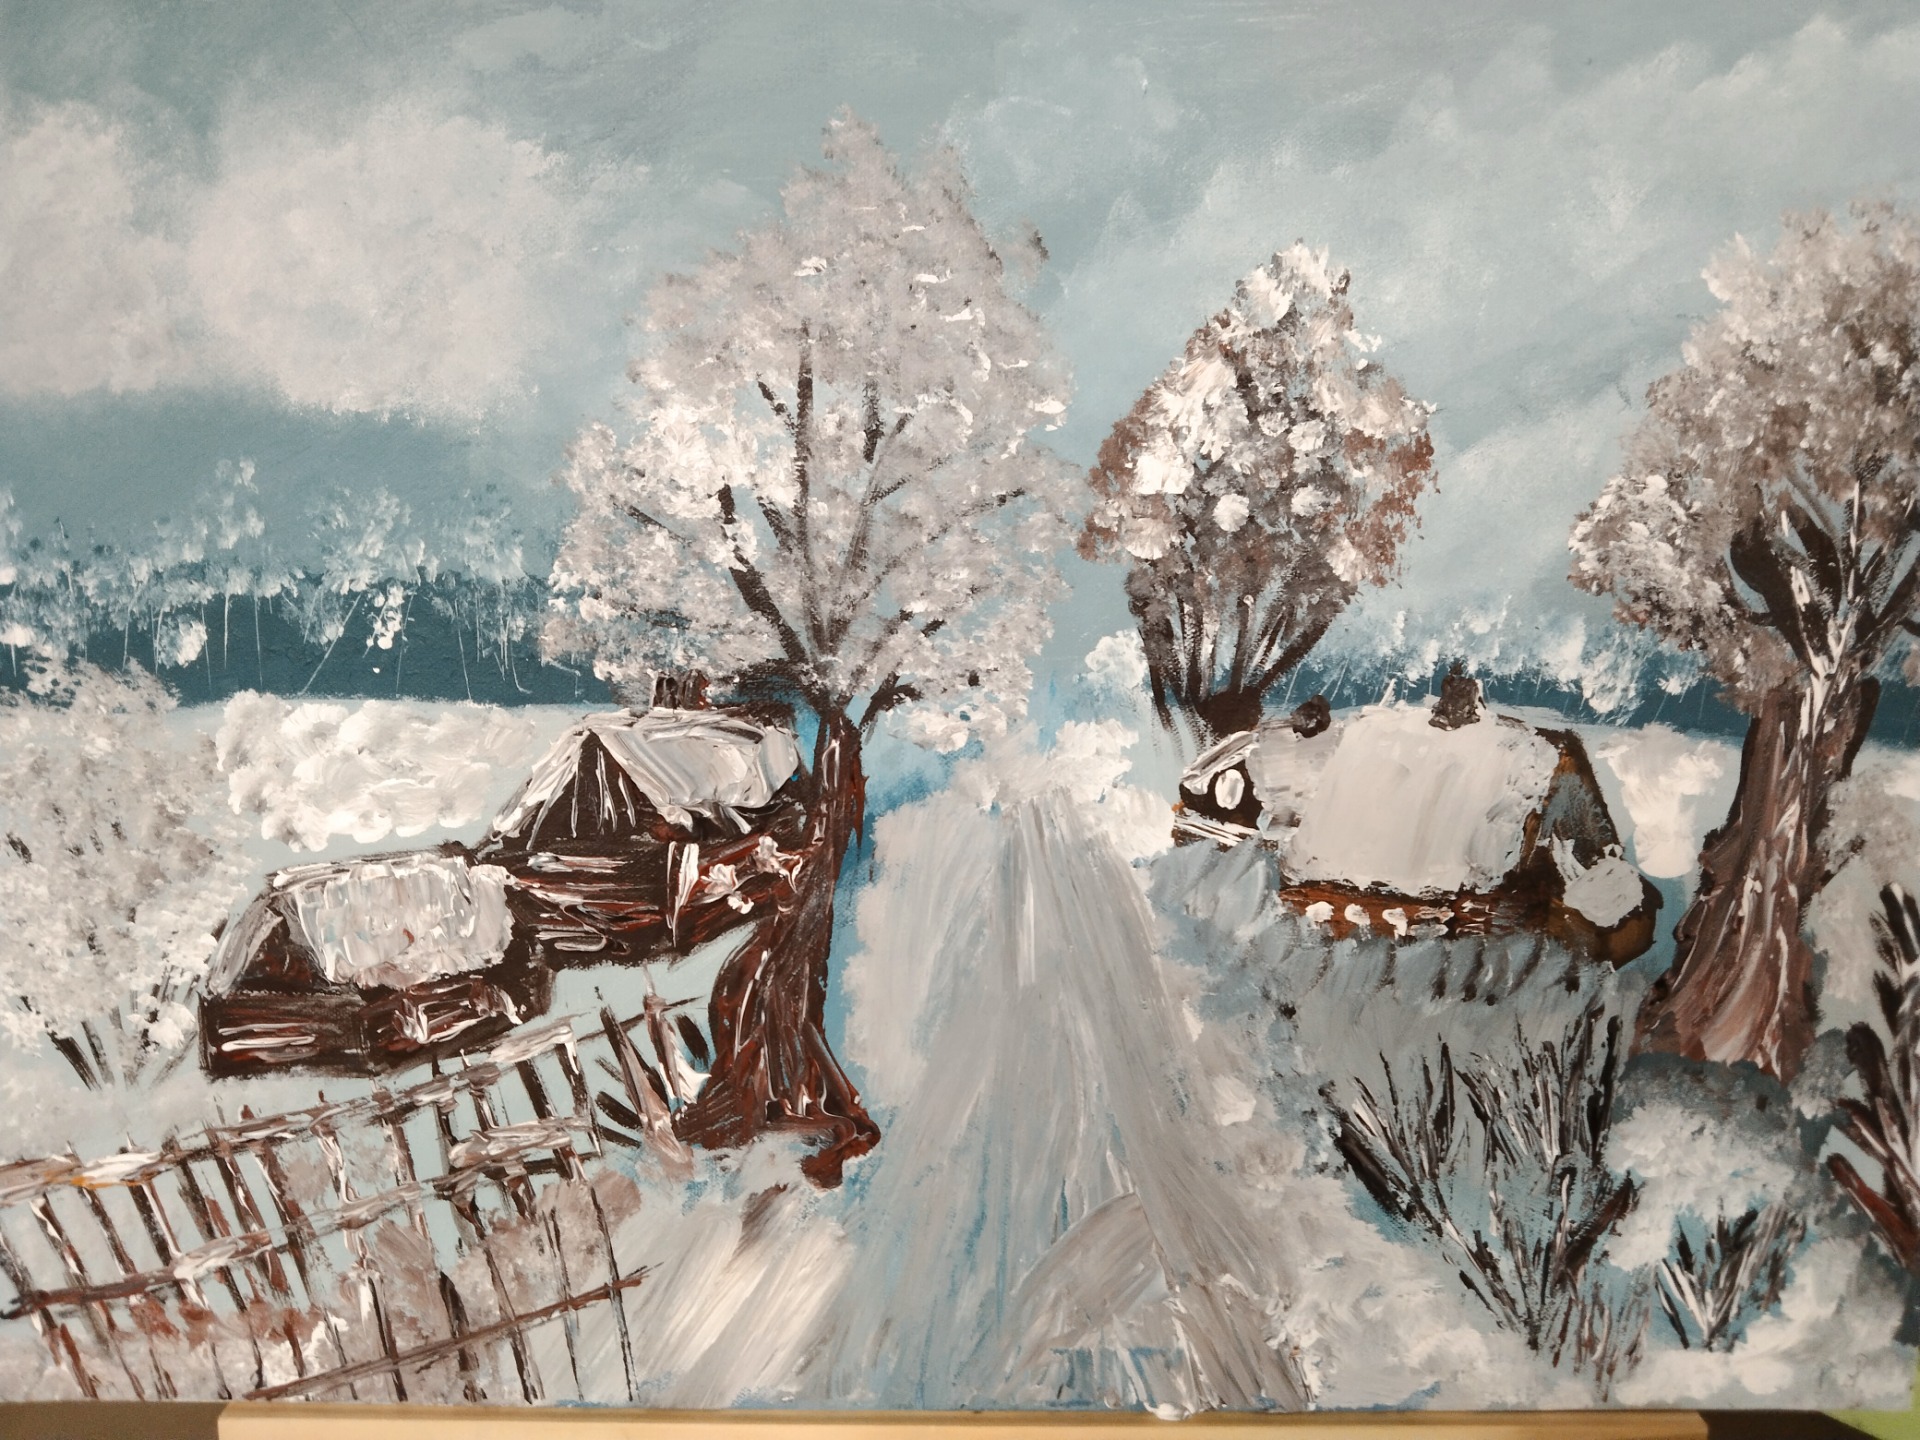 obraz malowany akrylami na płótnie przedstawiający pejzaż zimowy na wsi